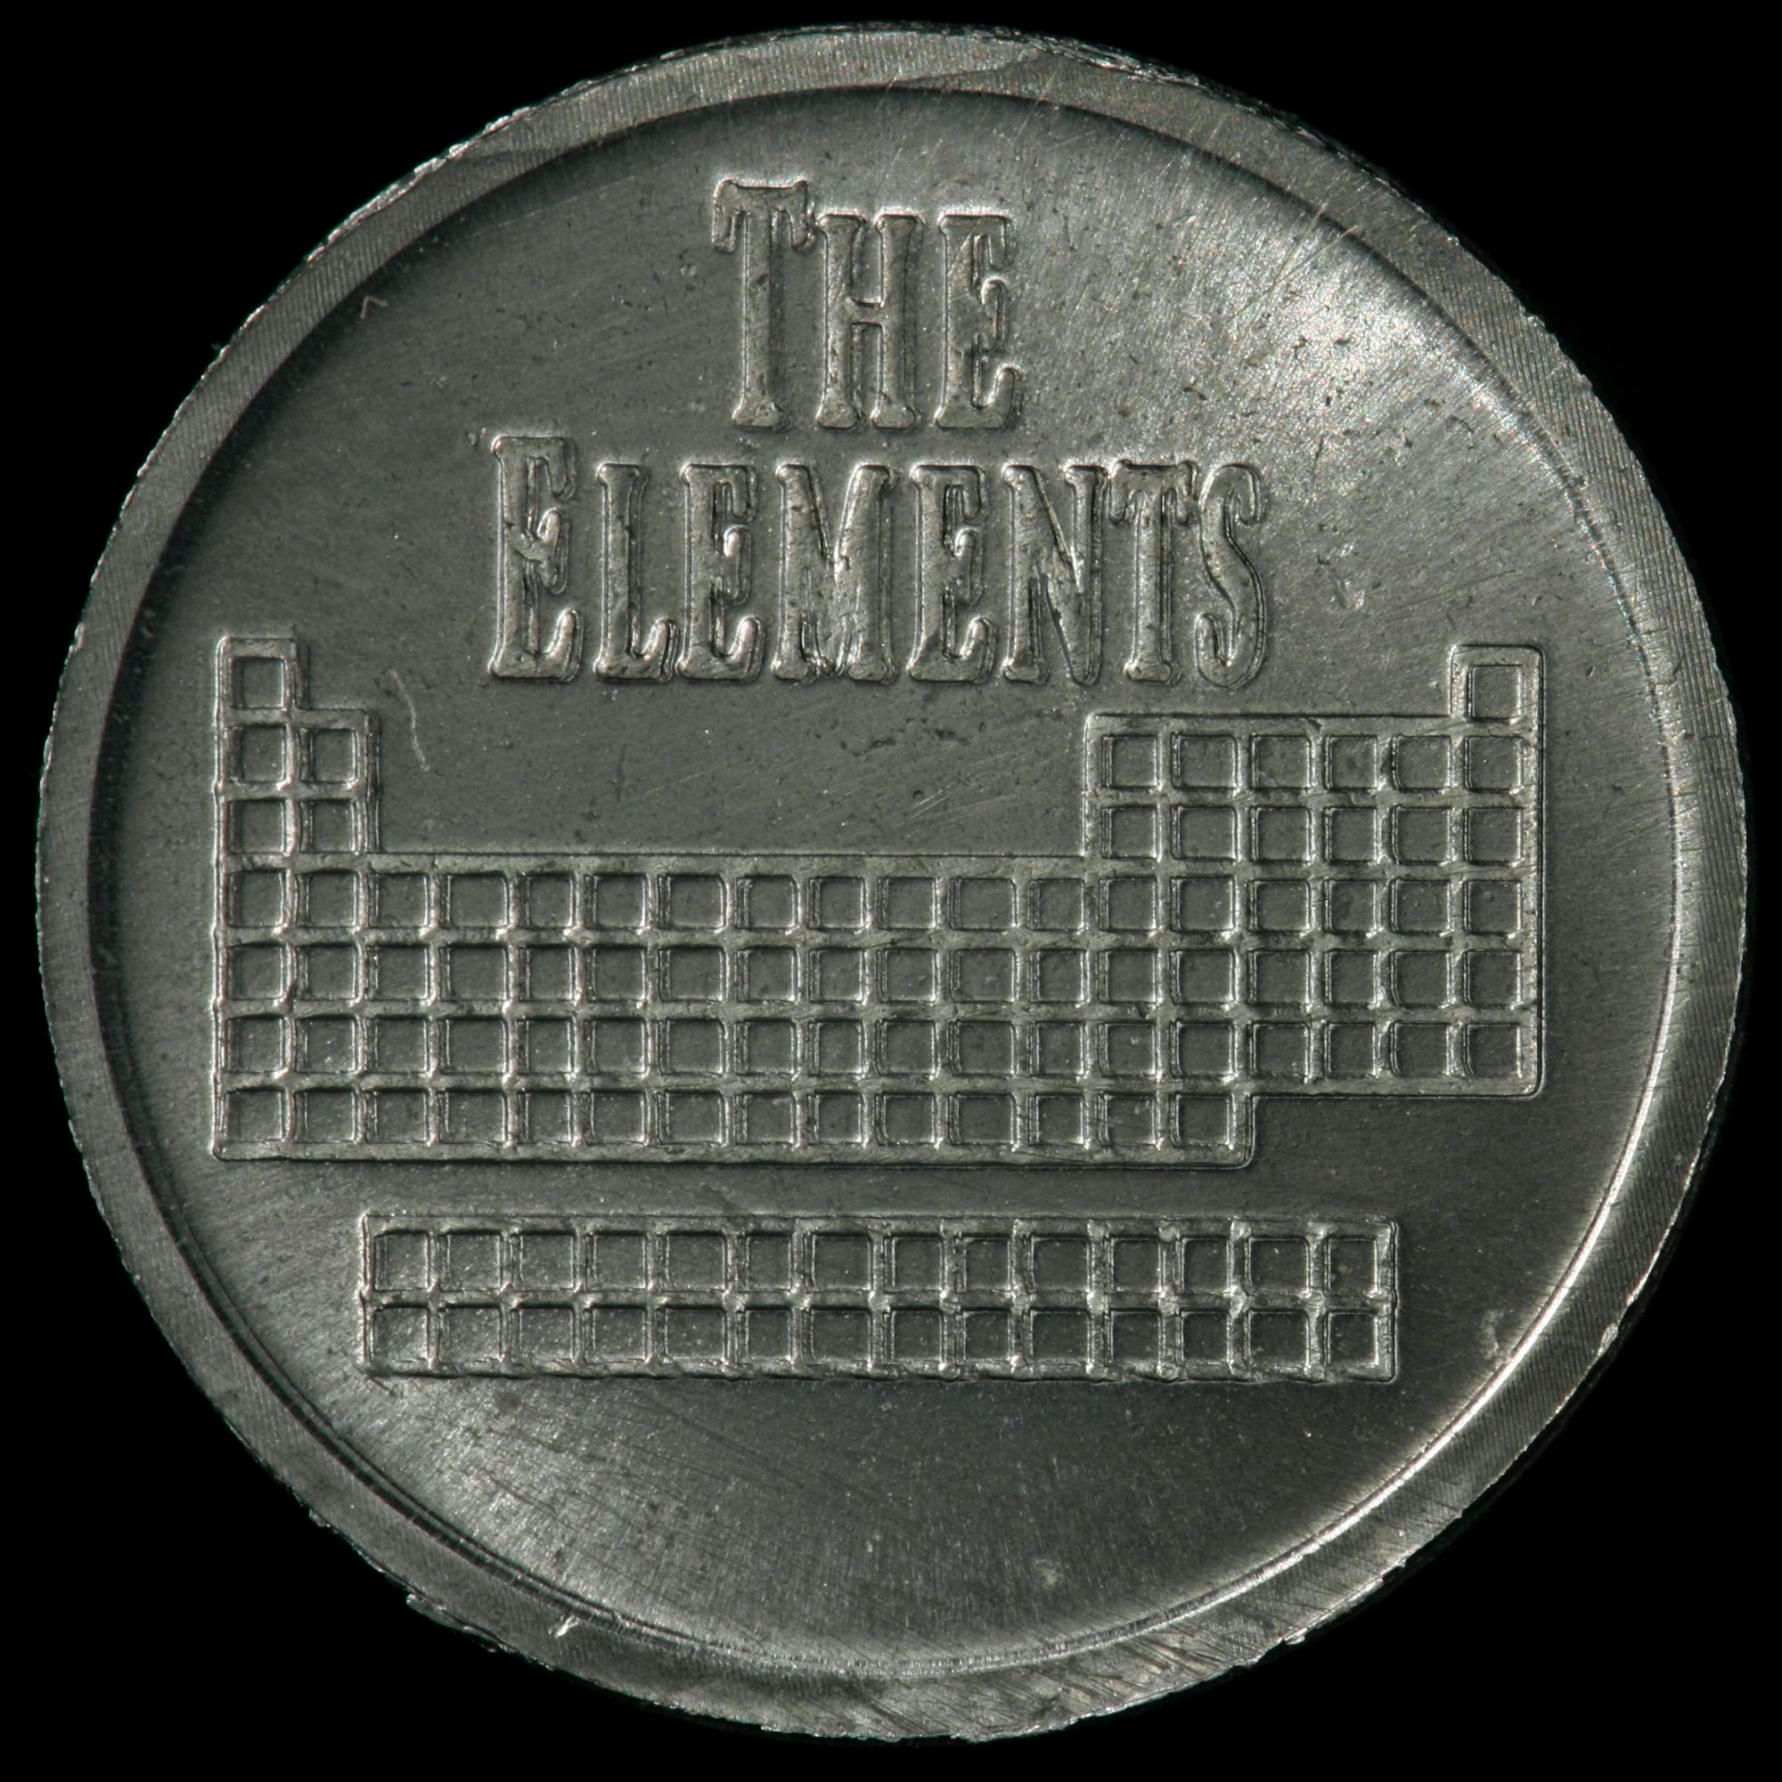 Molybdenum Element coin